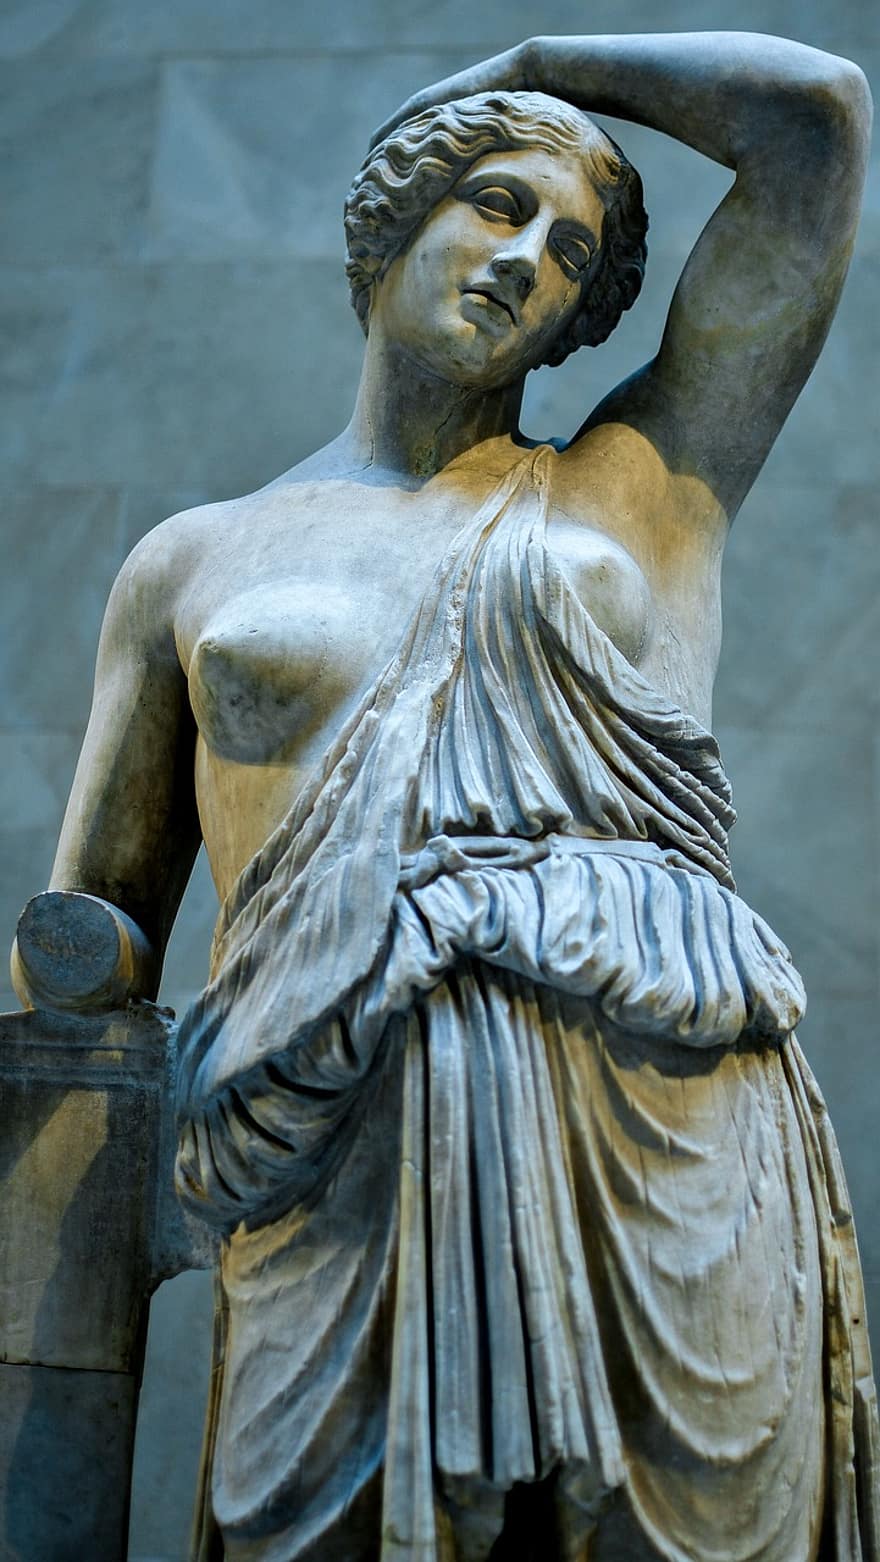 Sculpture, Statue, Art, Saint, Religion, Monument, Figure, Ancient, Marble, Old, Woman